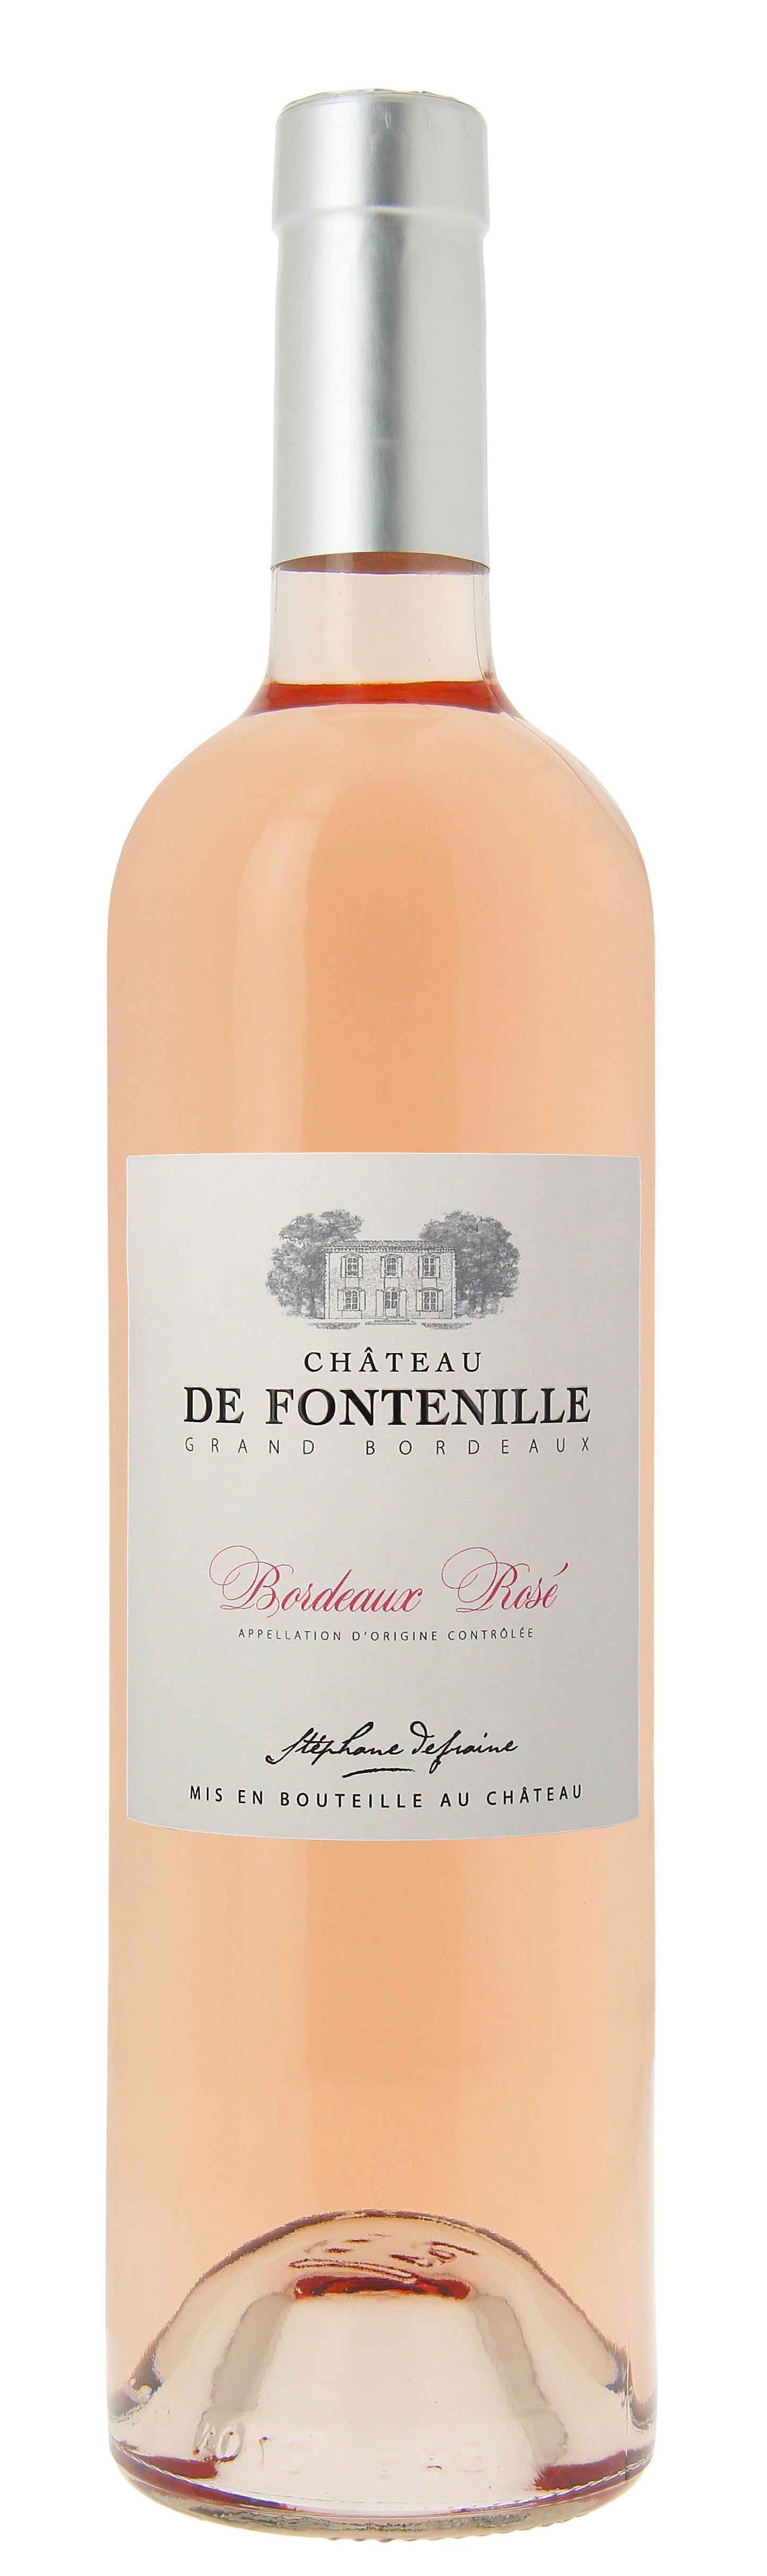 Chateau de Fontenille Bordeaux Rose 2019